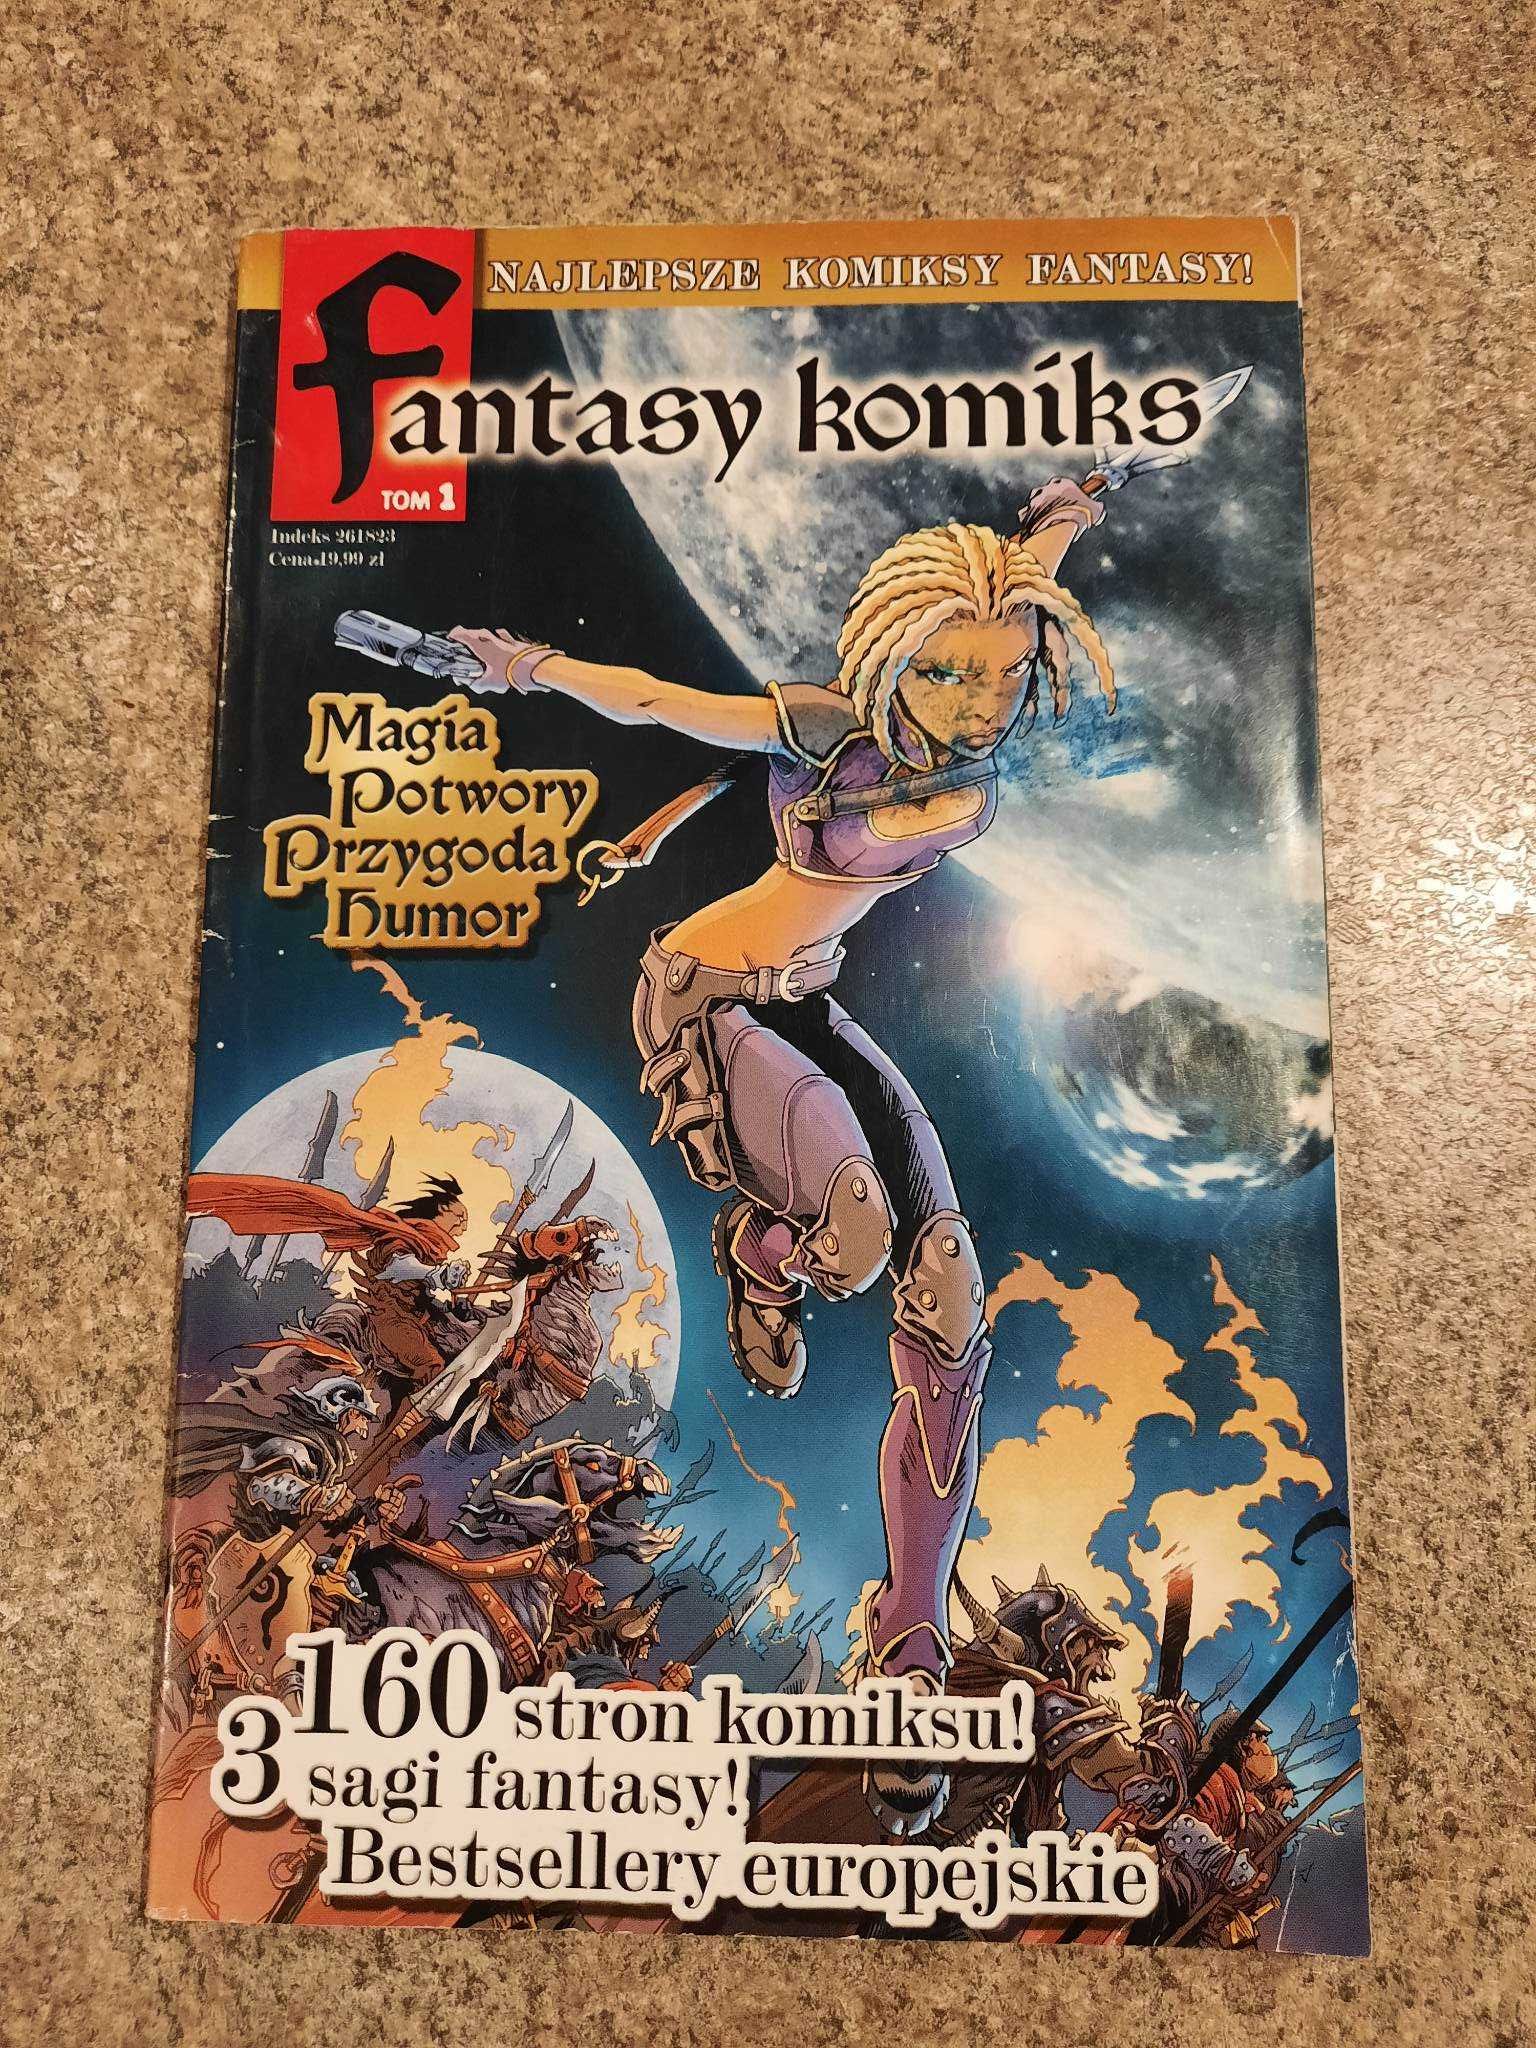 Fantasy Komiks tom 1